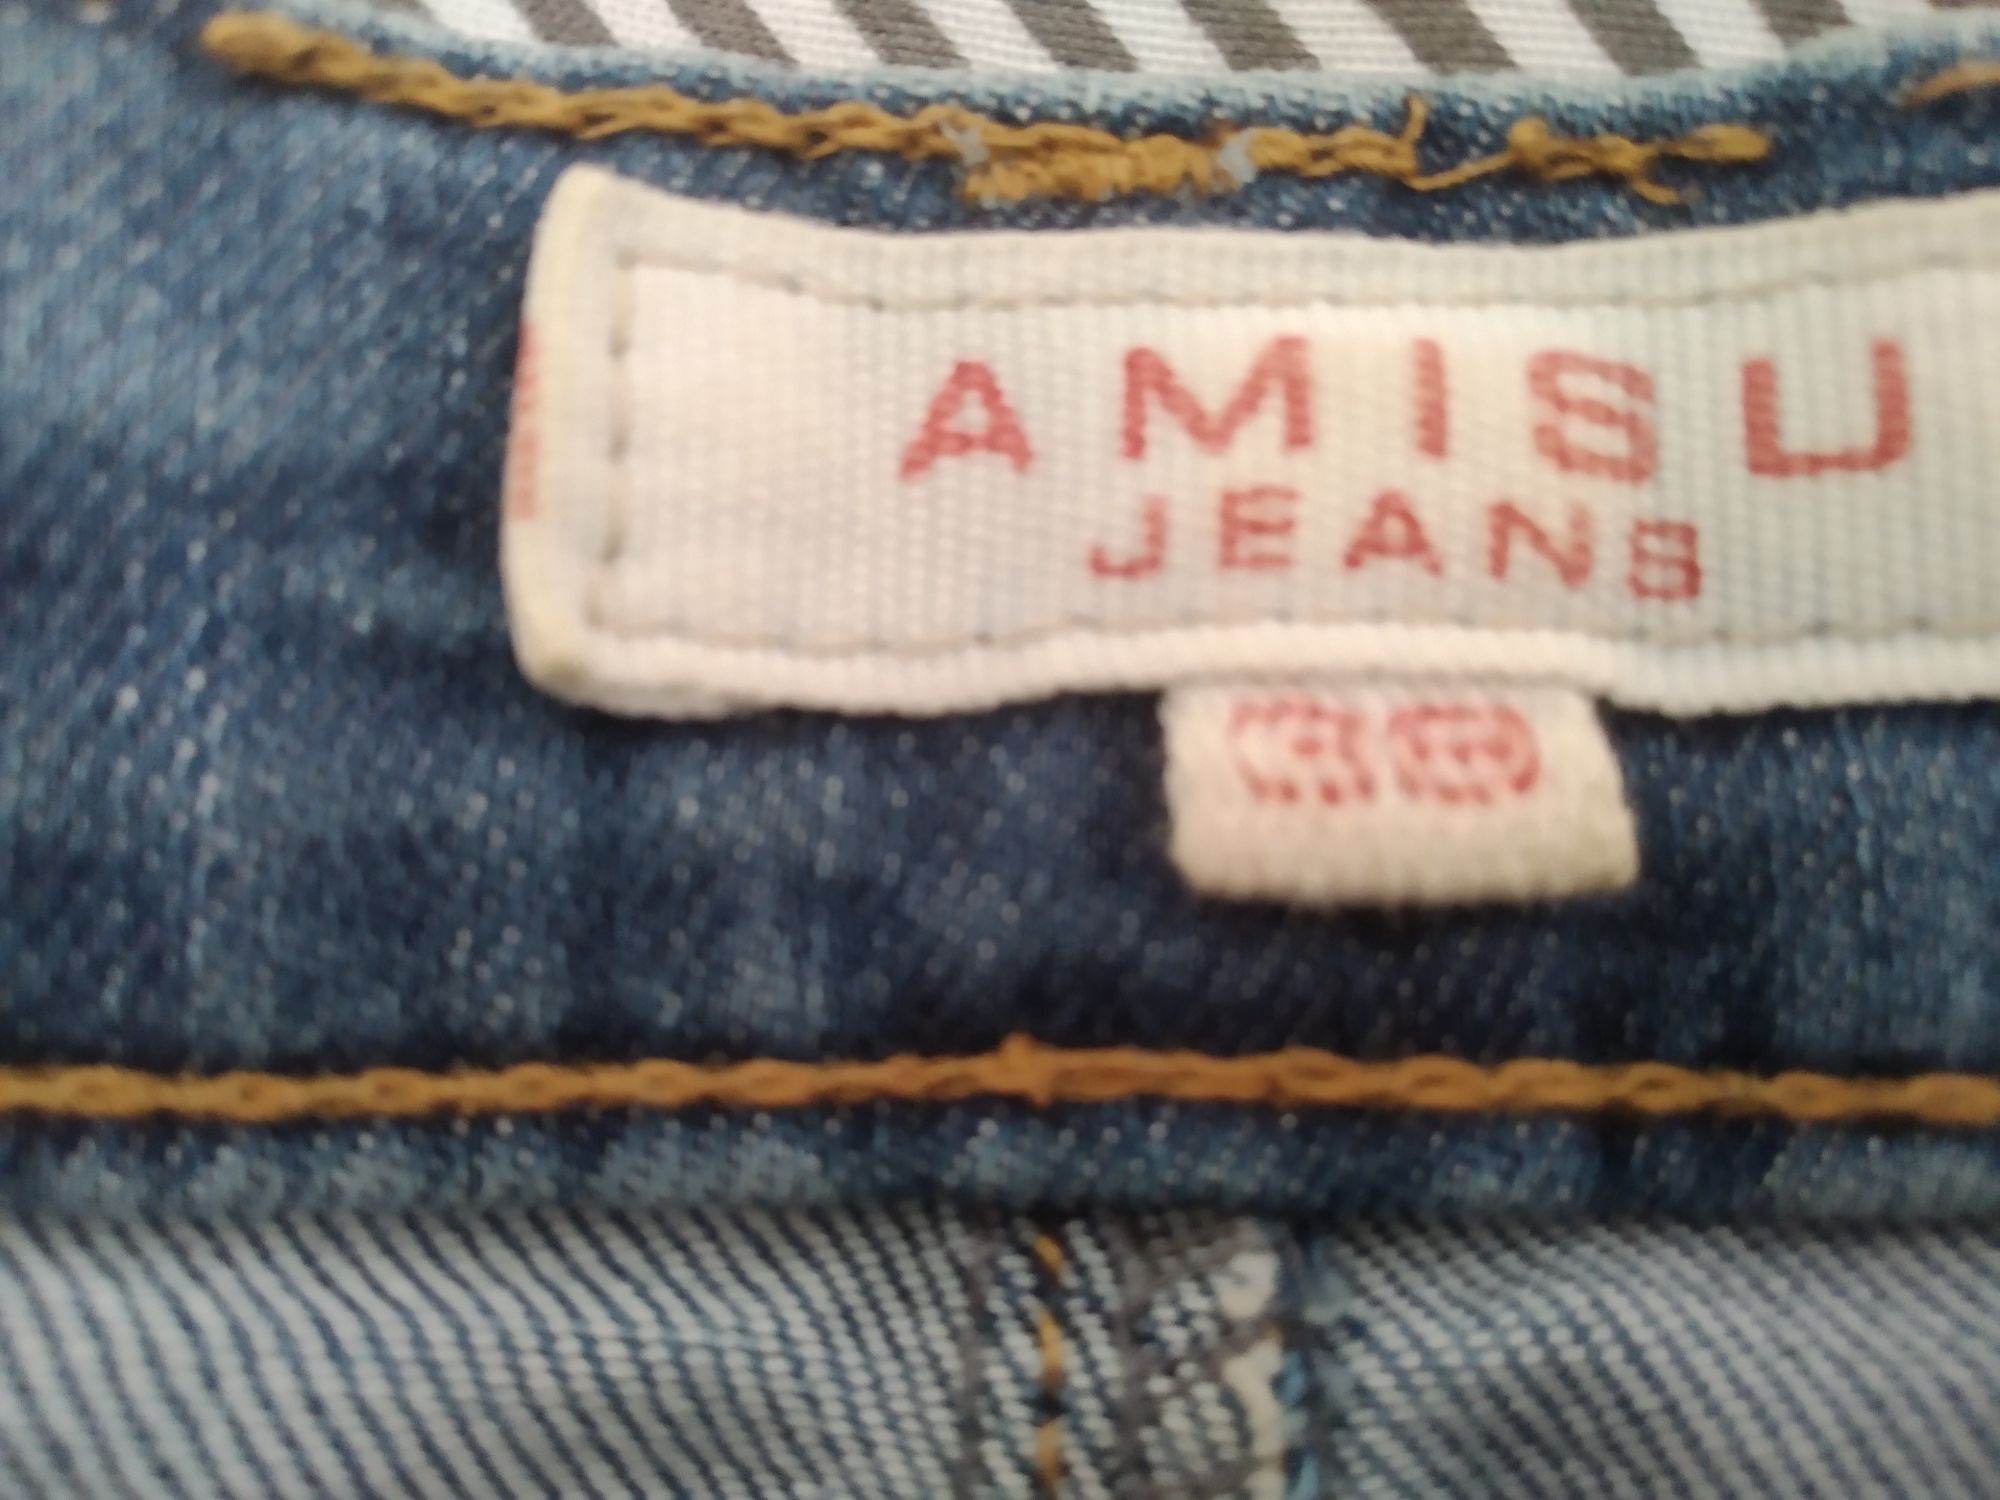 Spódnica jeansowa damska